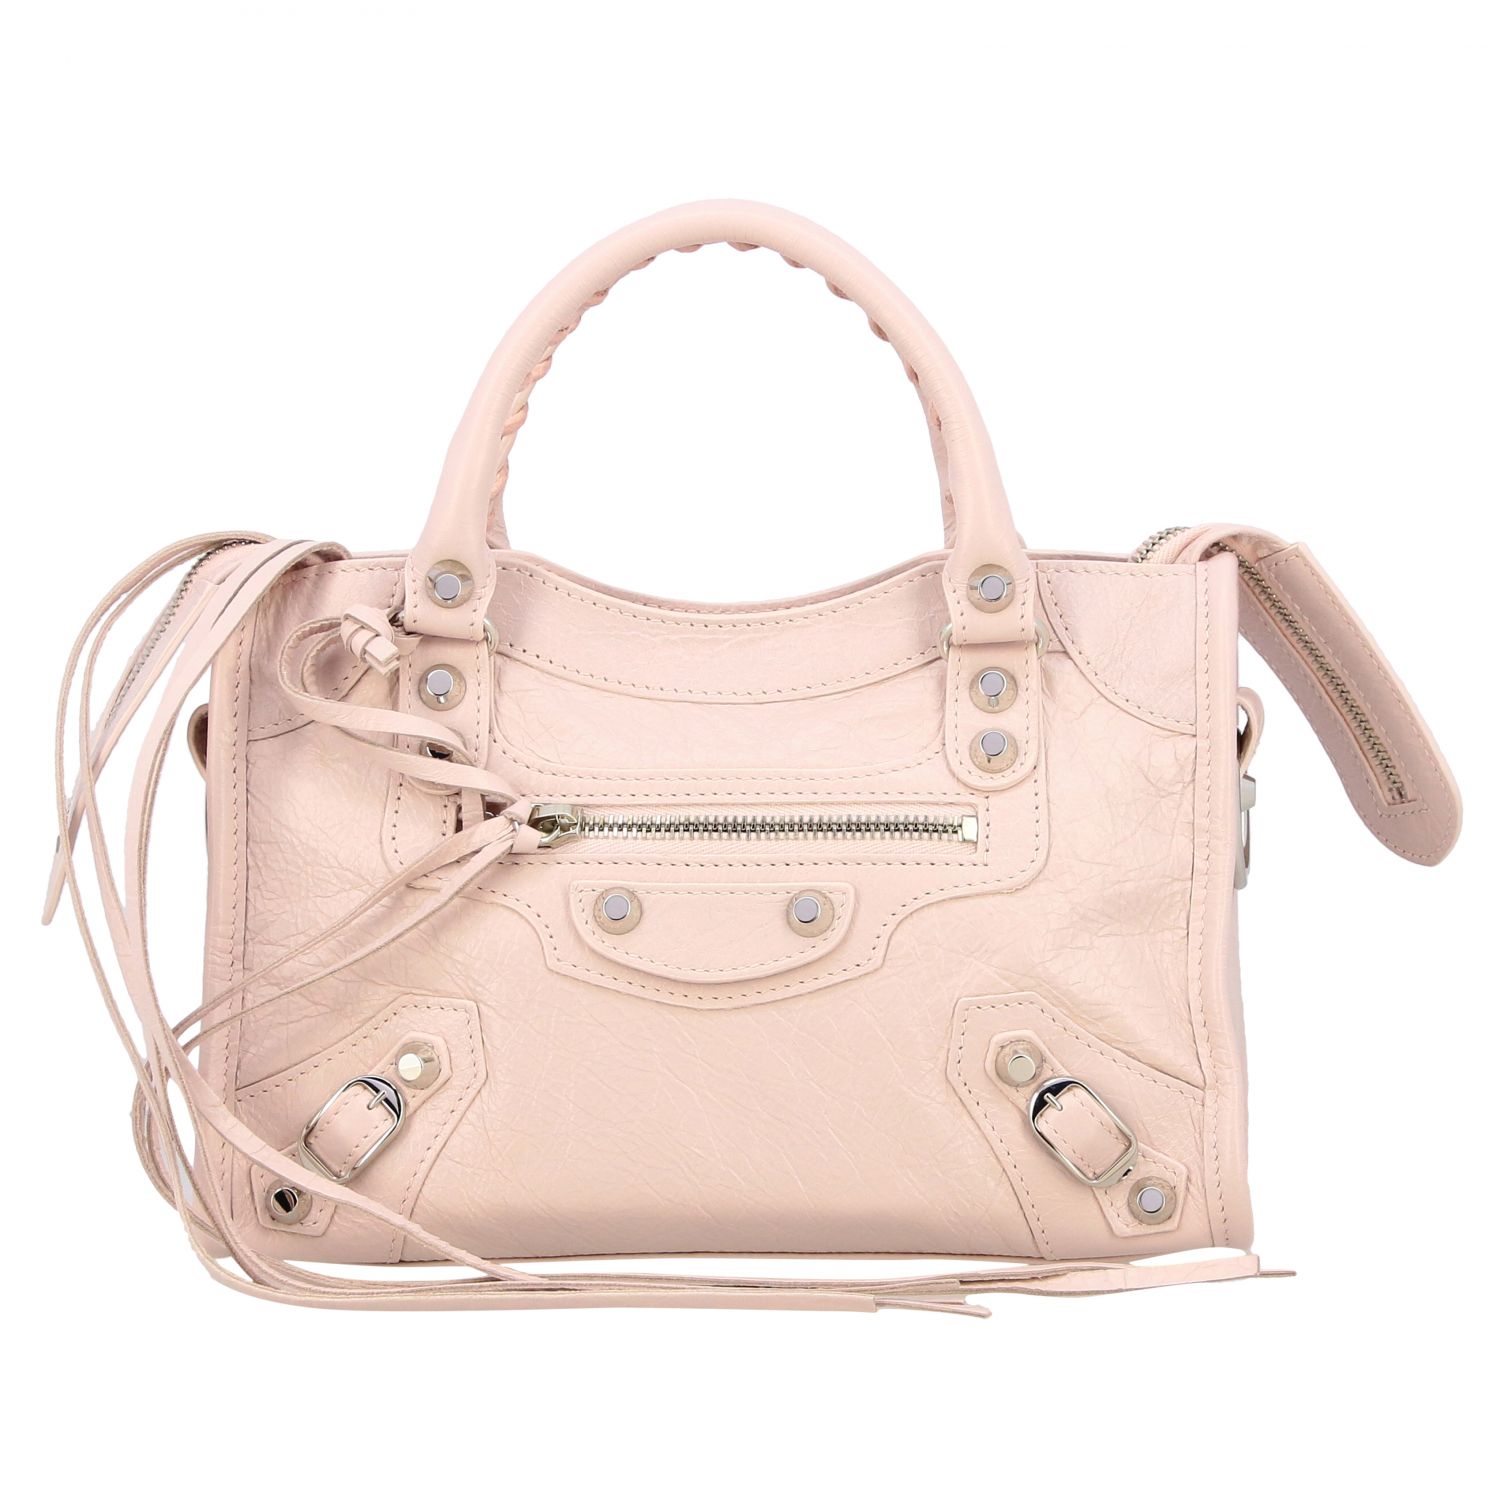 Balenciaga Outlet: mini bag for women - Pink | Balenciaga mini bag ...